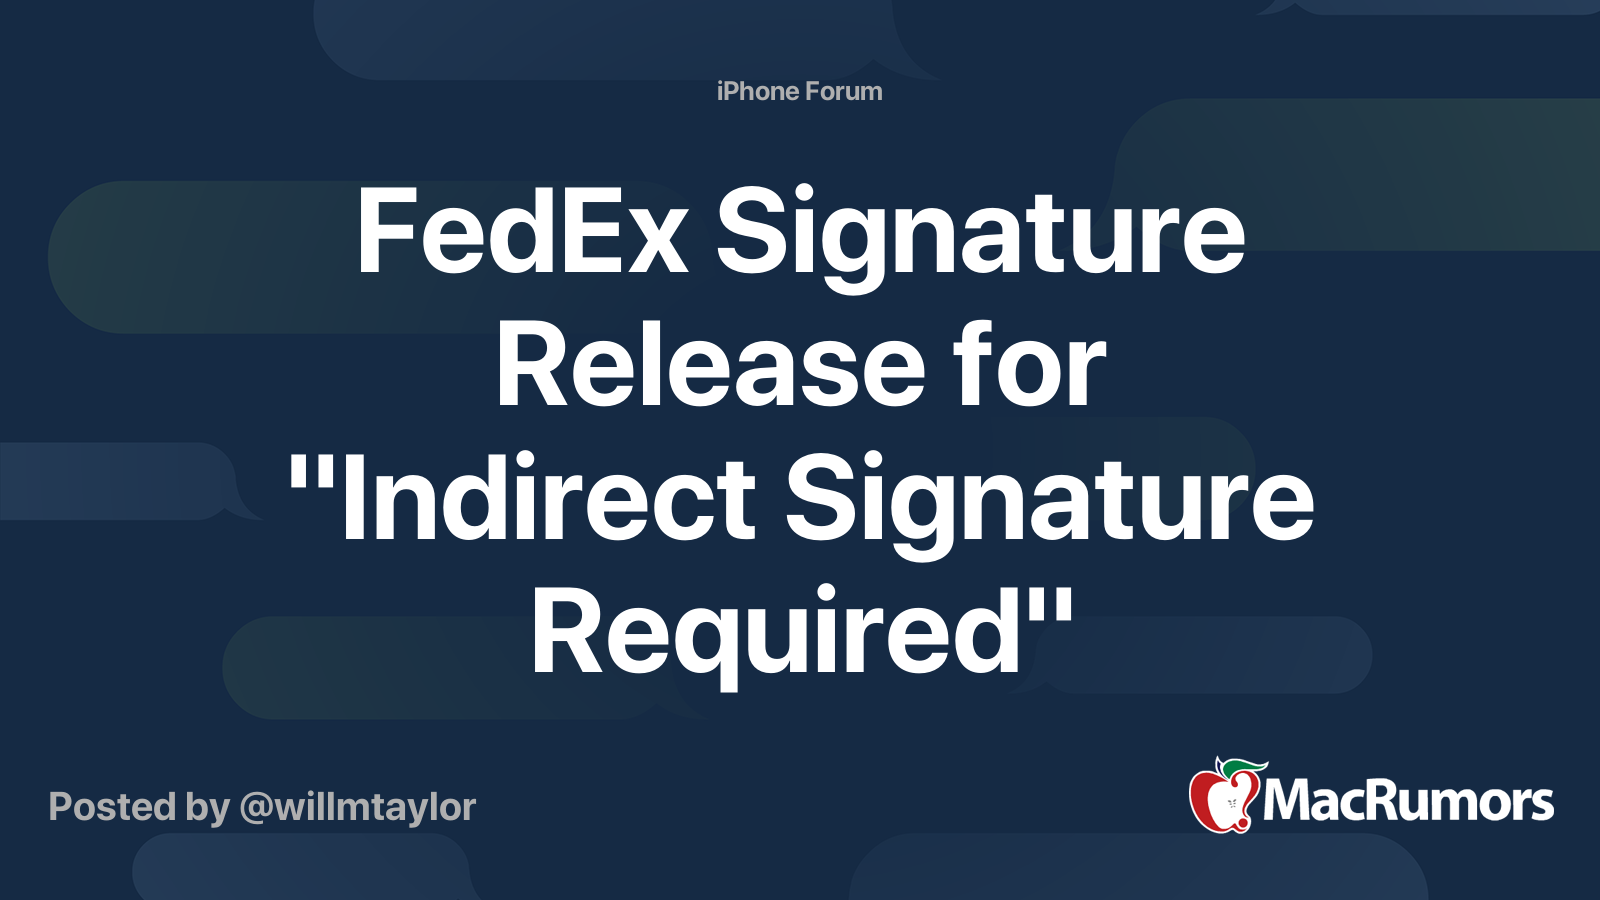 fedex-signature-release-for-indirect-signature-required-macrumors